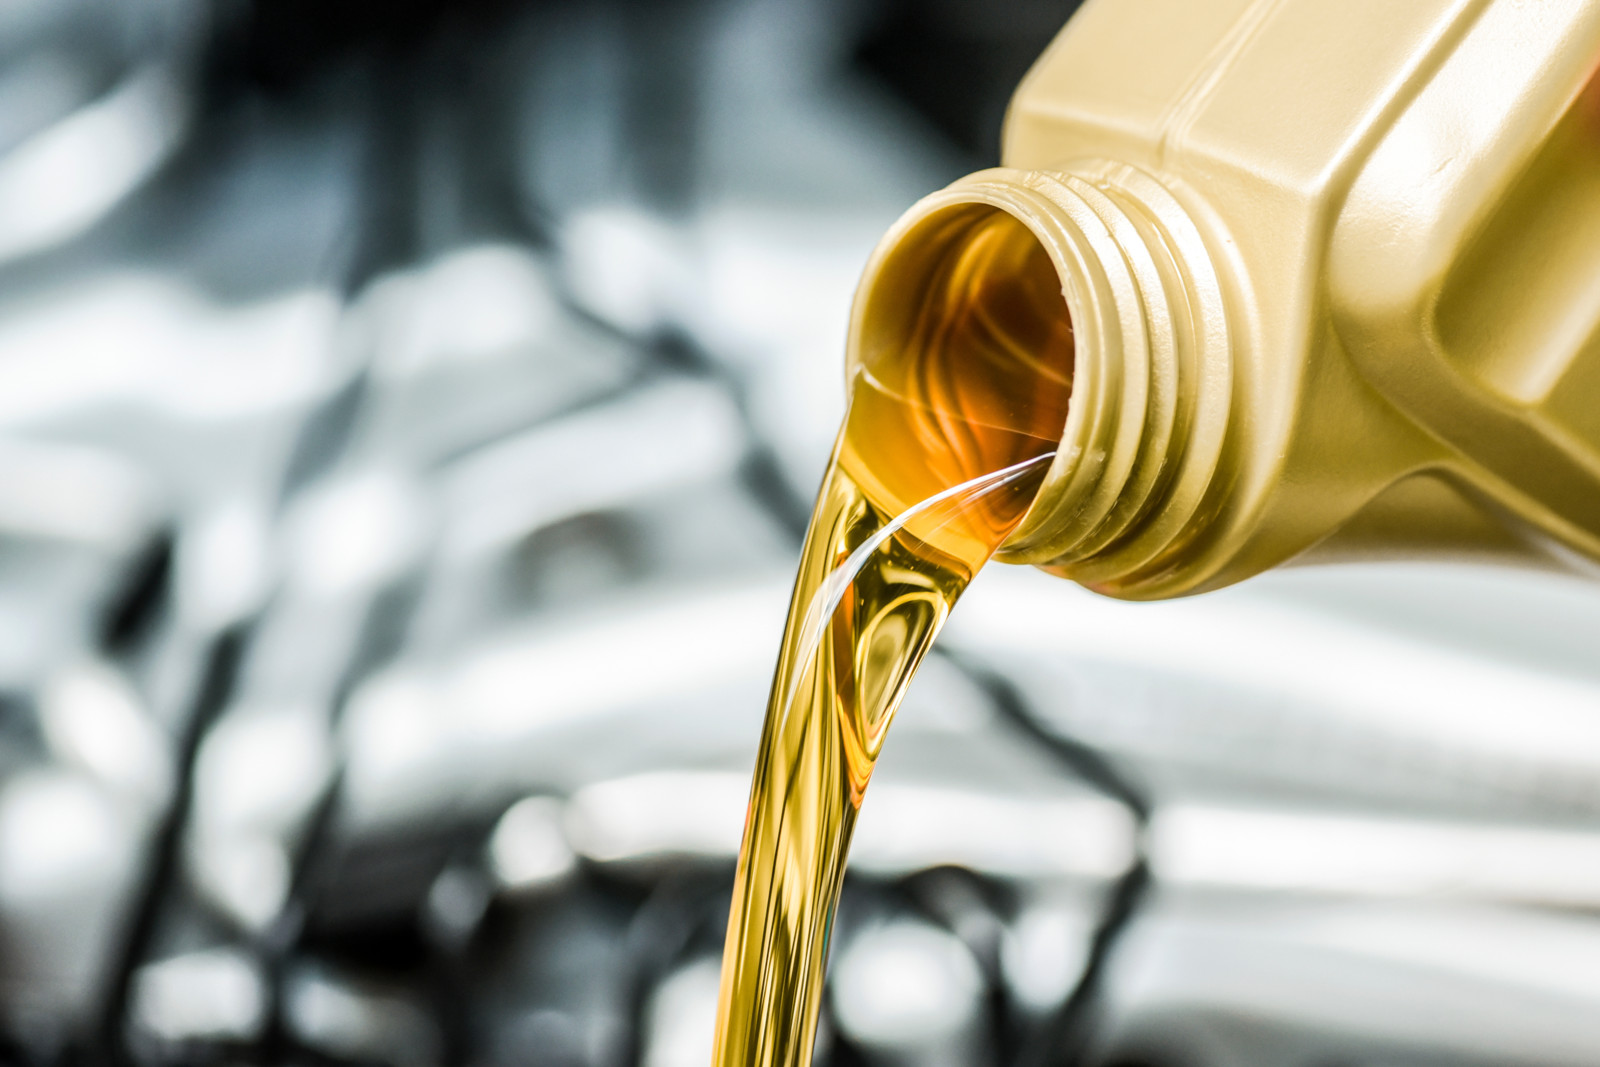 Frisches Motoröl ist wichtig für ein langes Motorleben – doch der Ölmarkt wird zunehmend unübersichtlich.